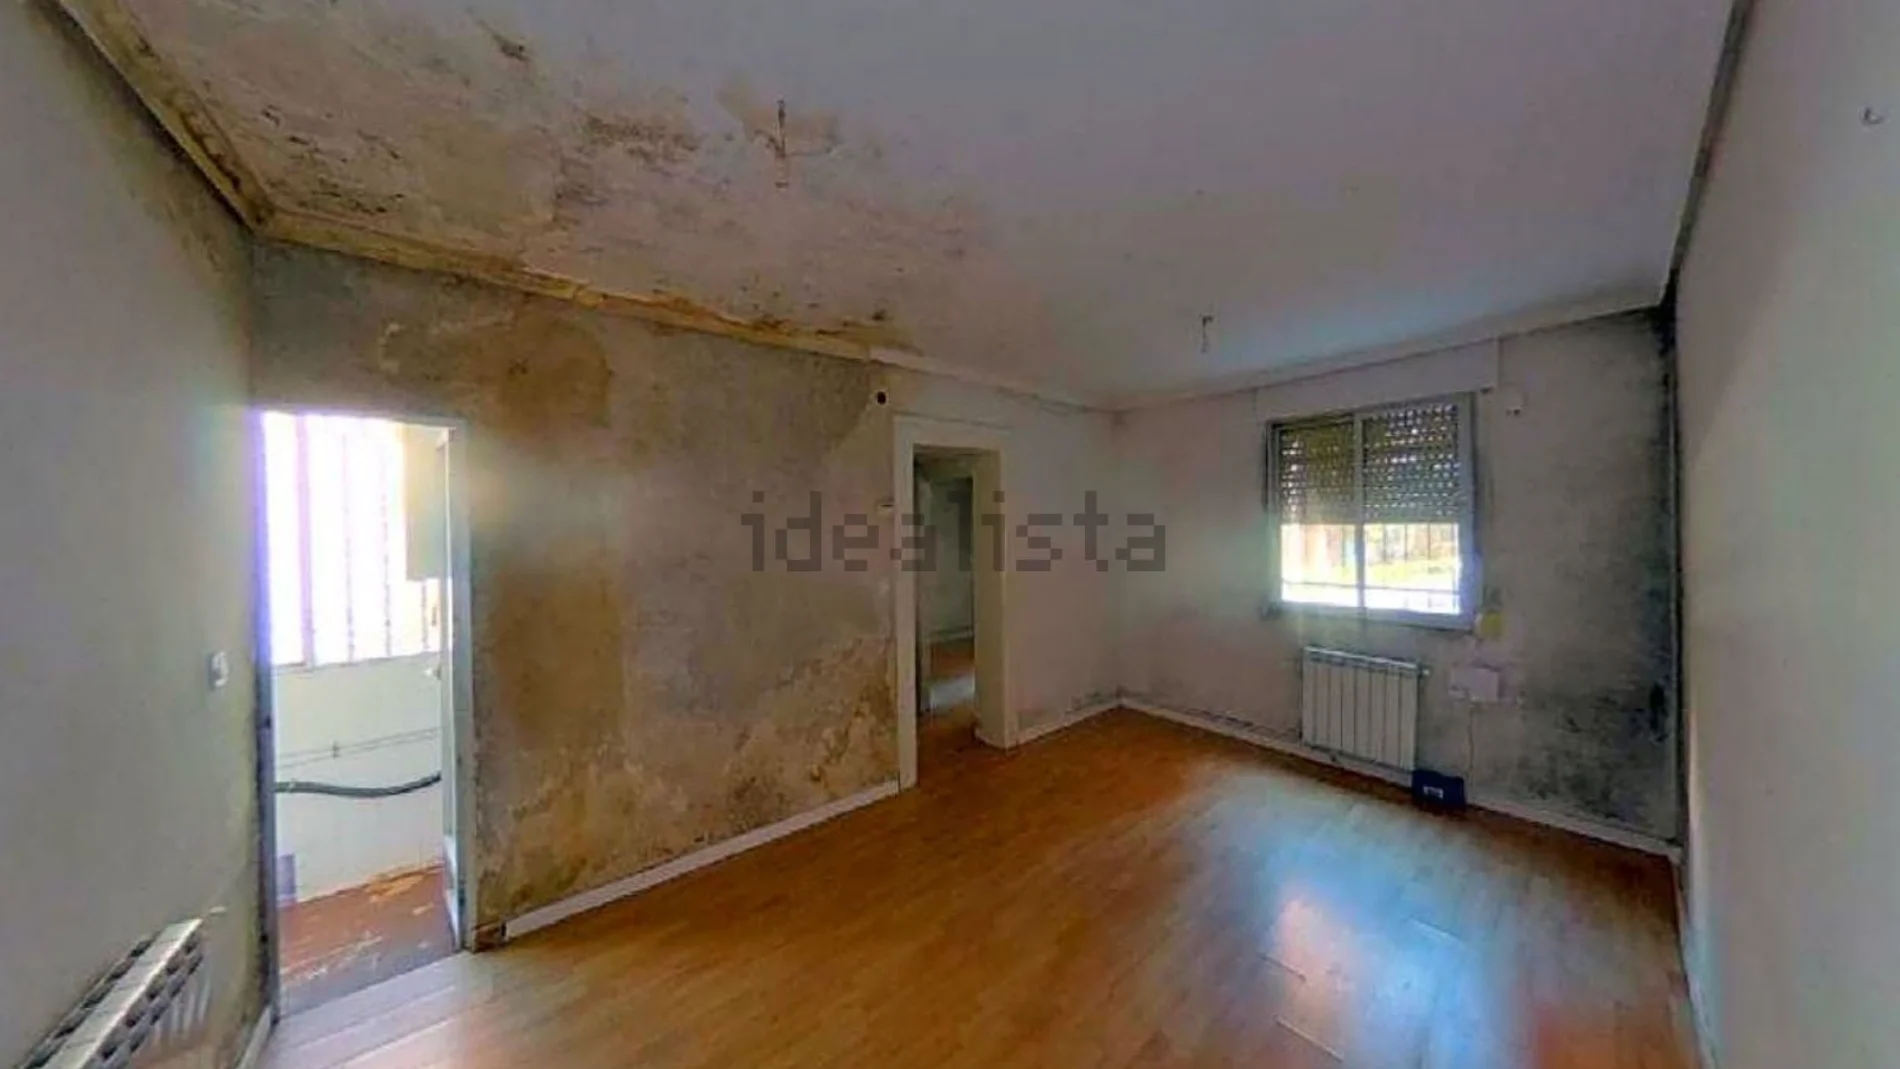 Un piso de 48m² con moho y humedades en Madrid, a la venta en Idealista por 101.000 euros